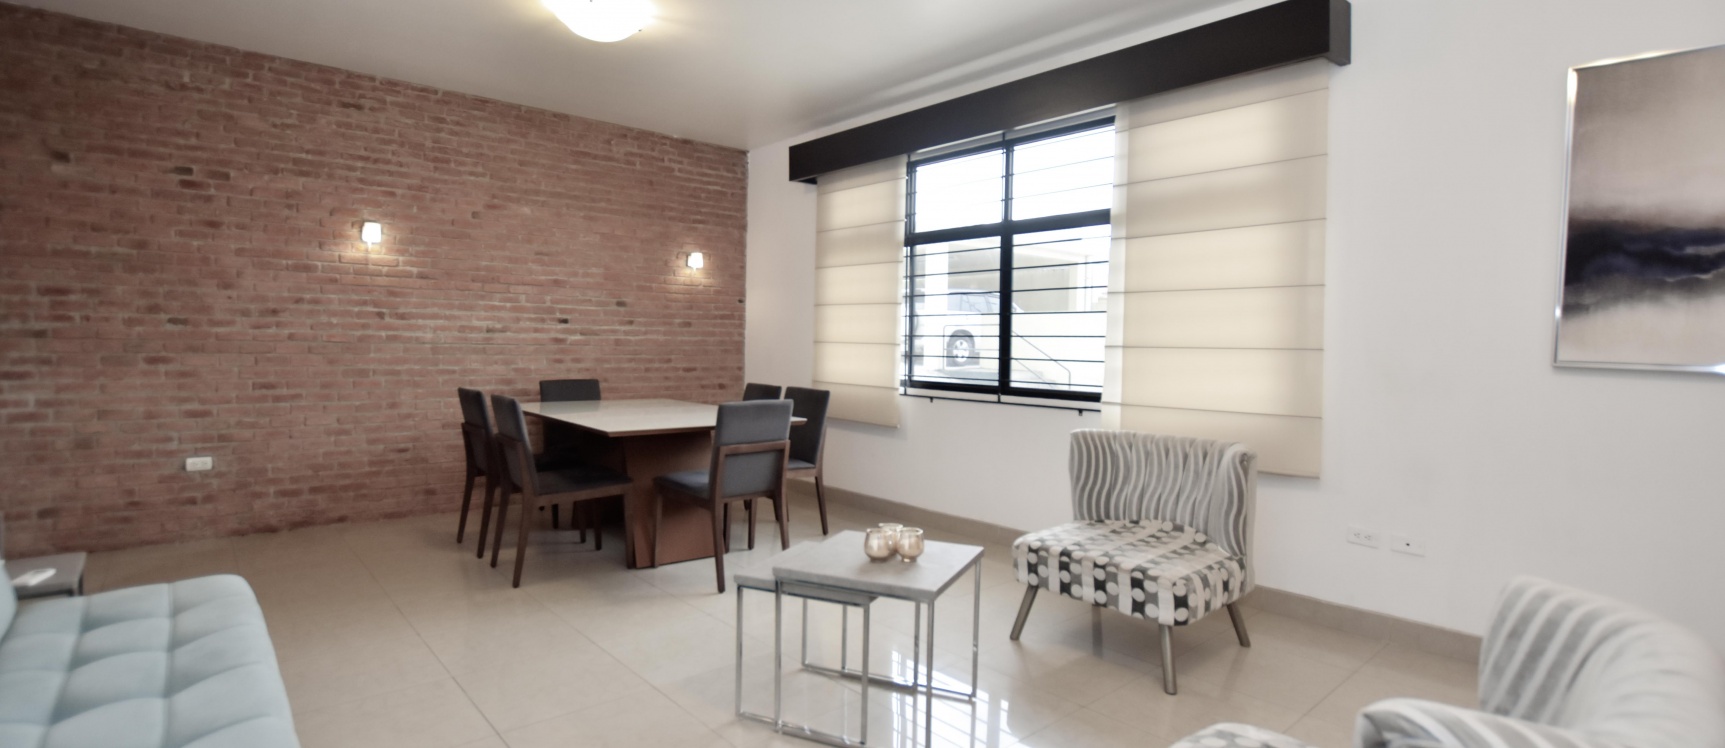 GeoBienes - Suite en venta ubicado en Ciudad Colón - Plusvalia Guayaquil Casas de venta y alquiler Inmobiliaria Ecuador